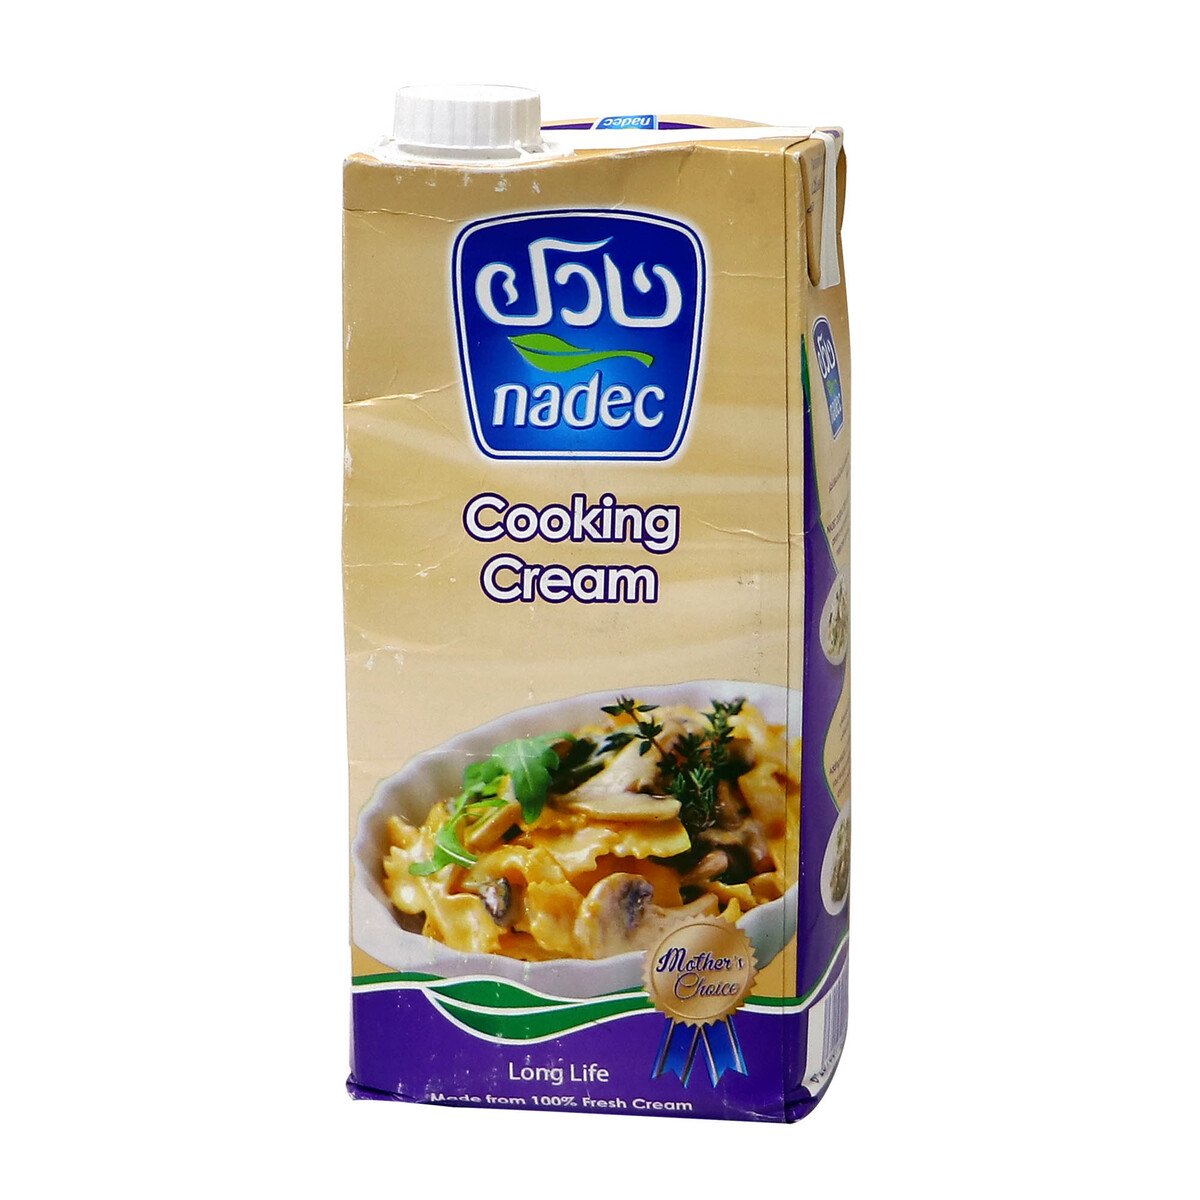 اشتري قم بشراء نادك كريمة الطبخ 1 لتر Online at Best Price من الموقع - من لولو هايبر ماركت Cooking Cream في الكويت